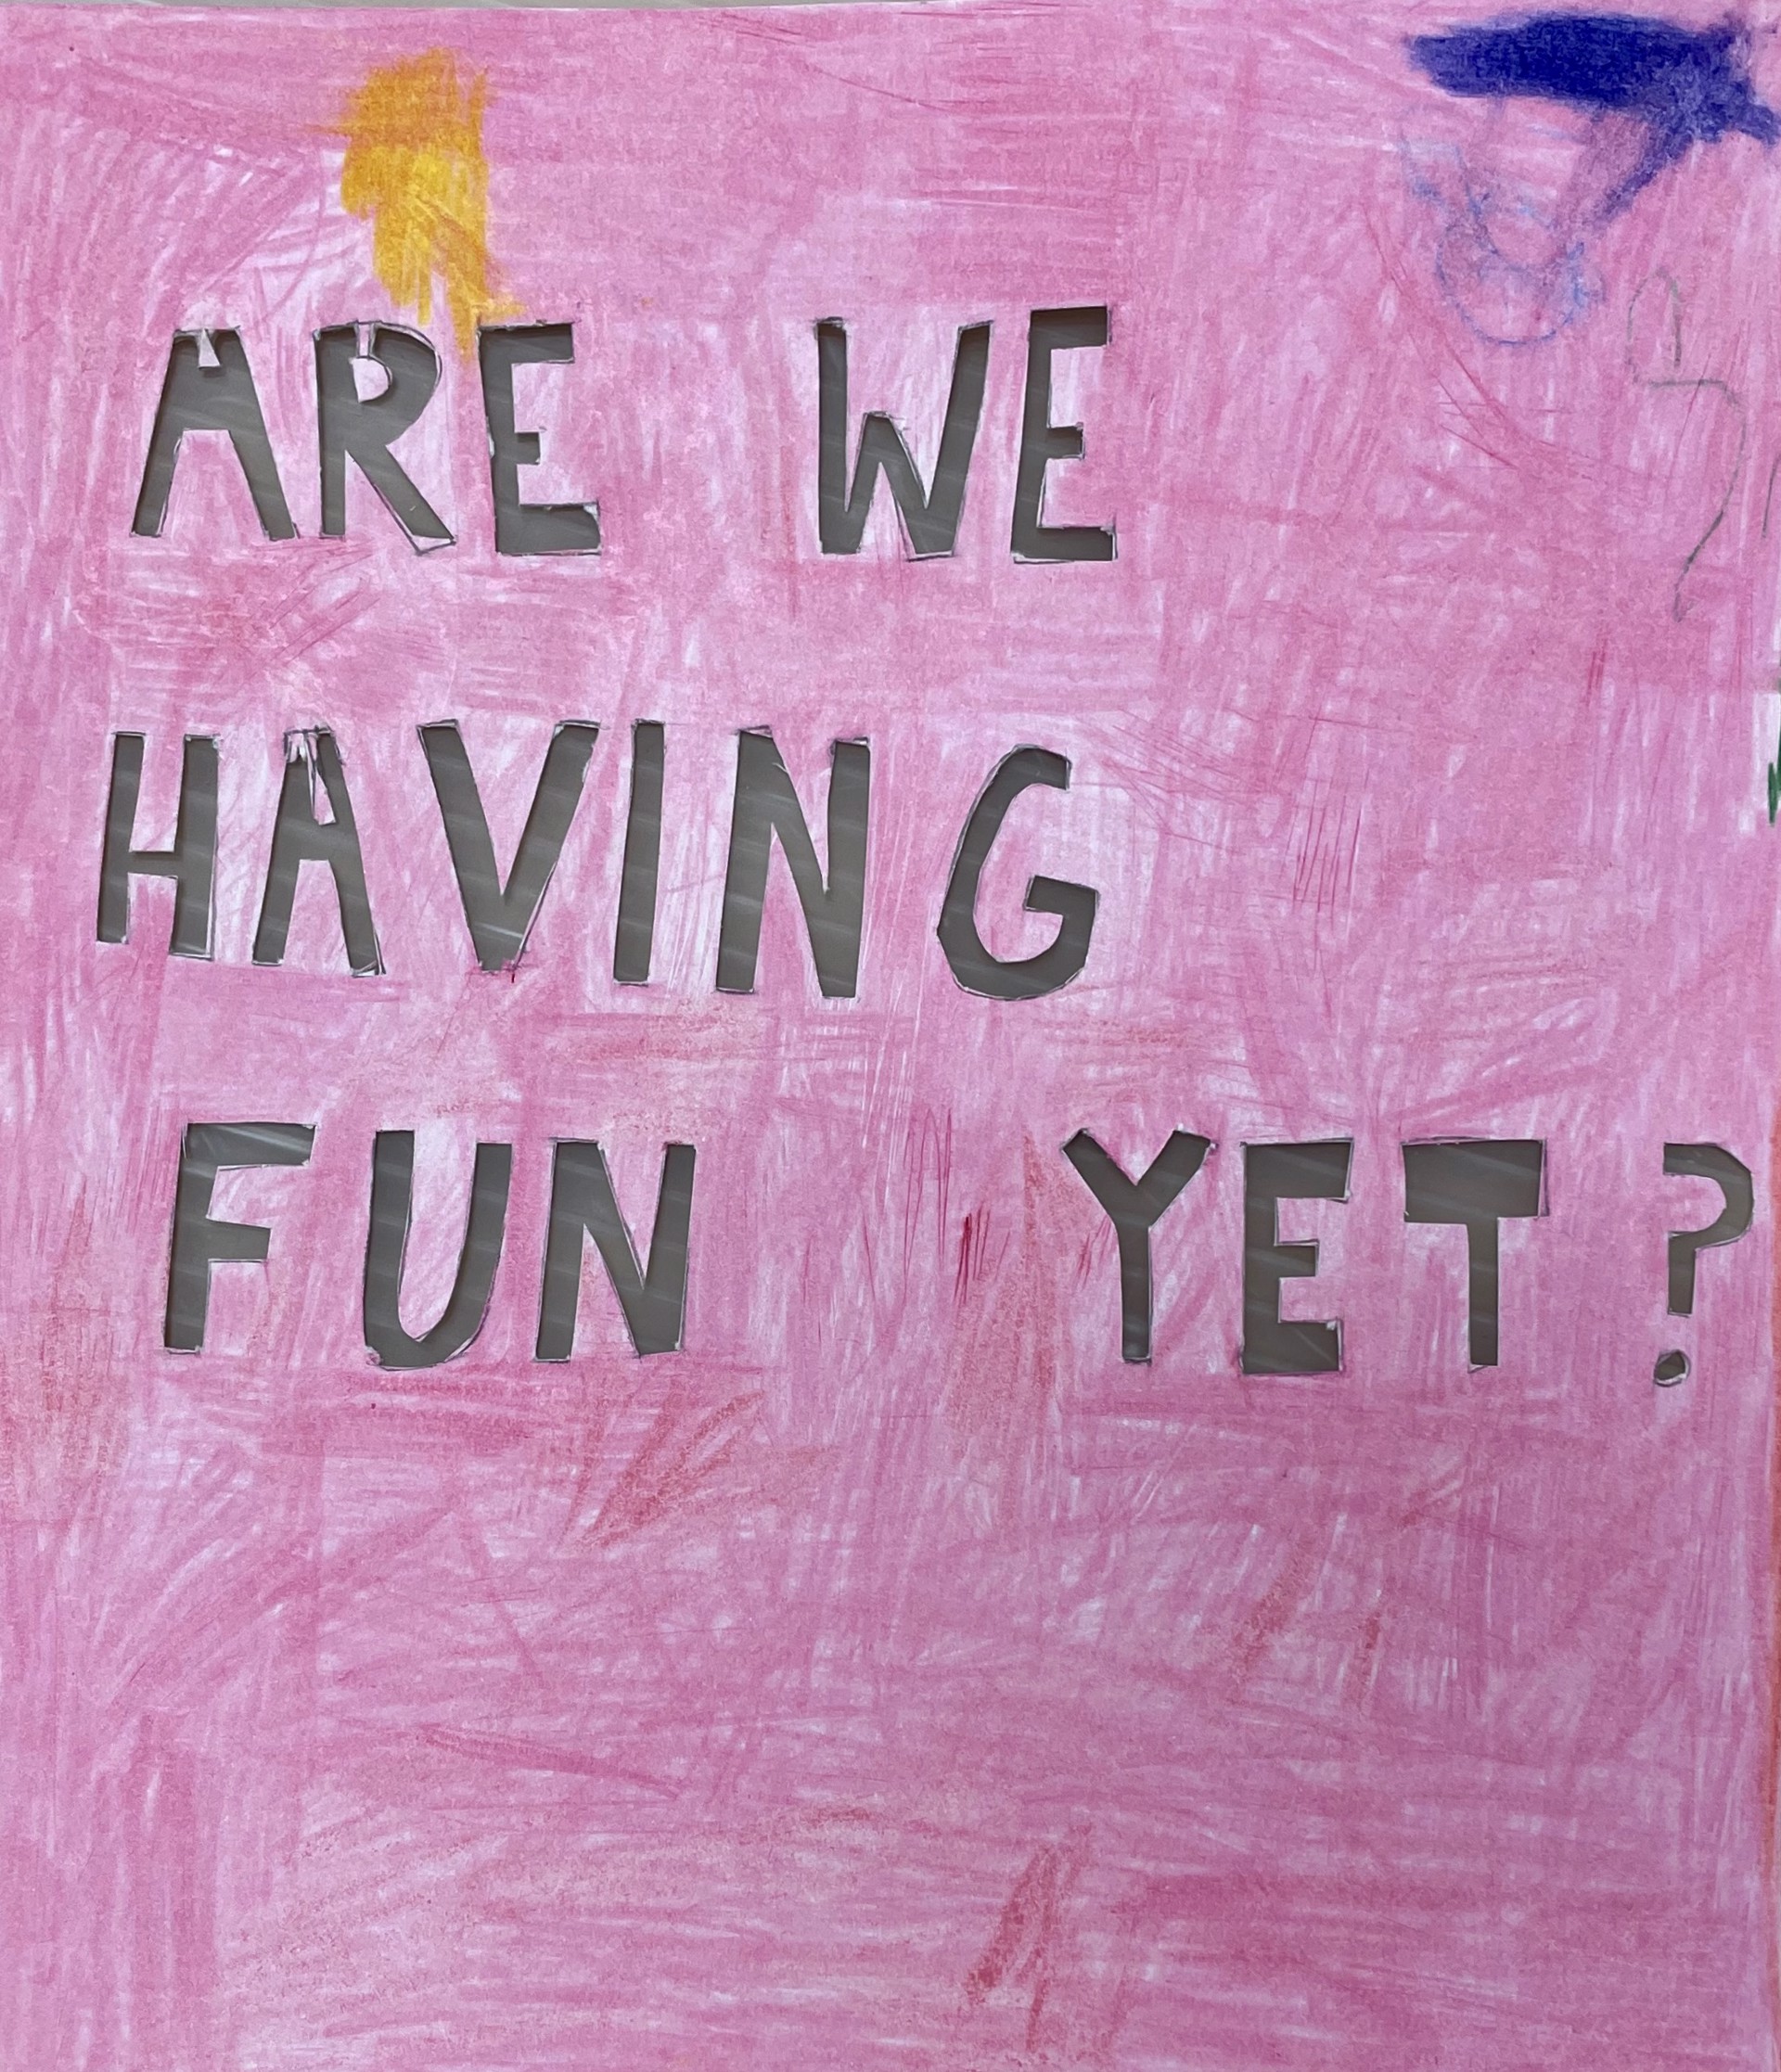 Are We Having Fun Yet? by Damien Hoar de Galvan